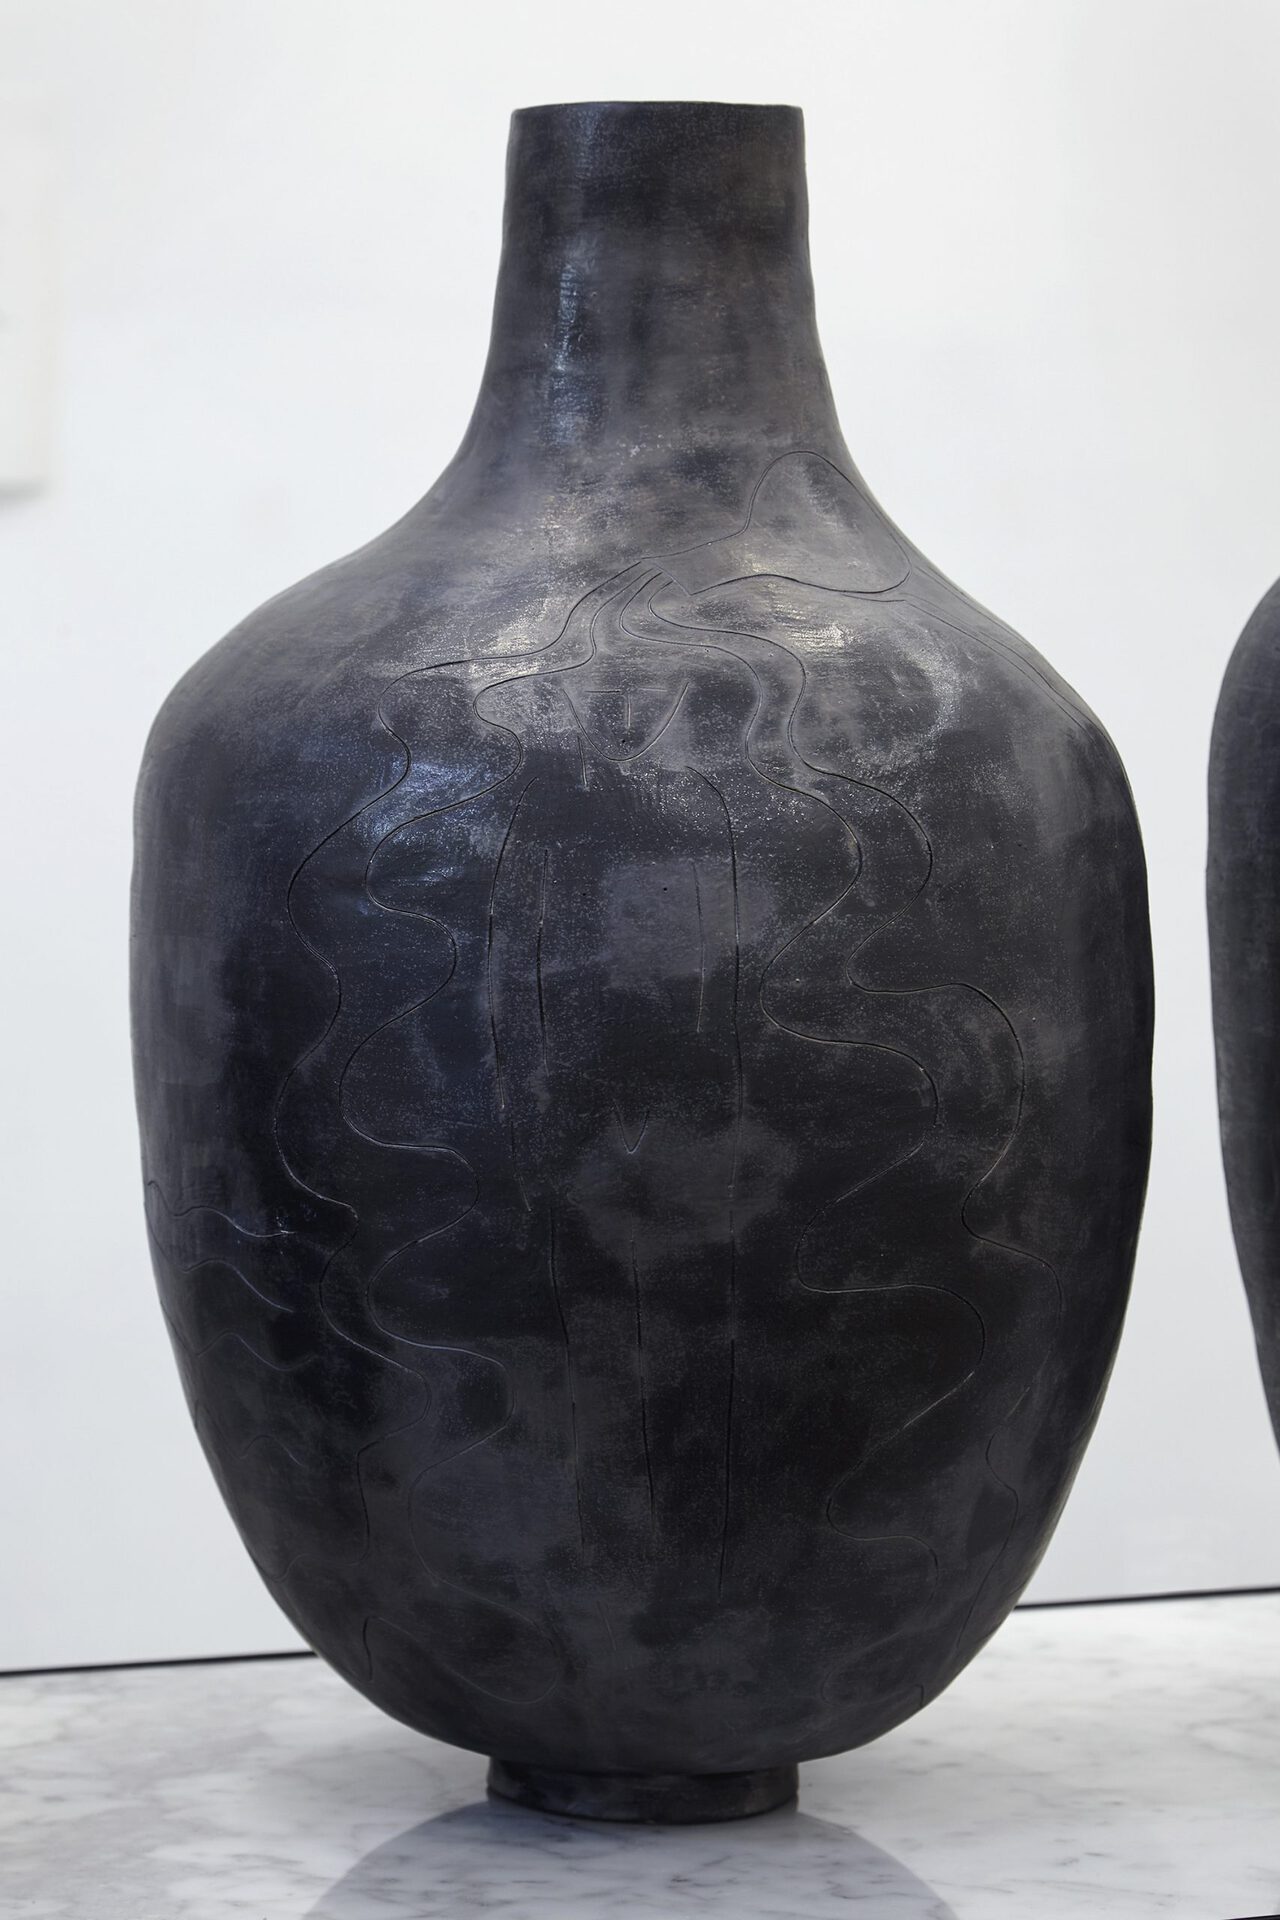 Sári Ember: Bathers in black, 2020, ceramics, 57x40x40 cm, Photo: Sári Ember, courtesy of Ani Molnár Gallery